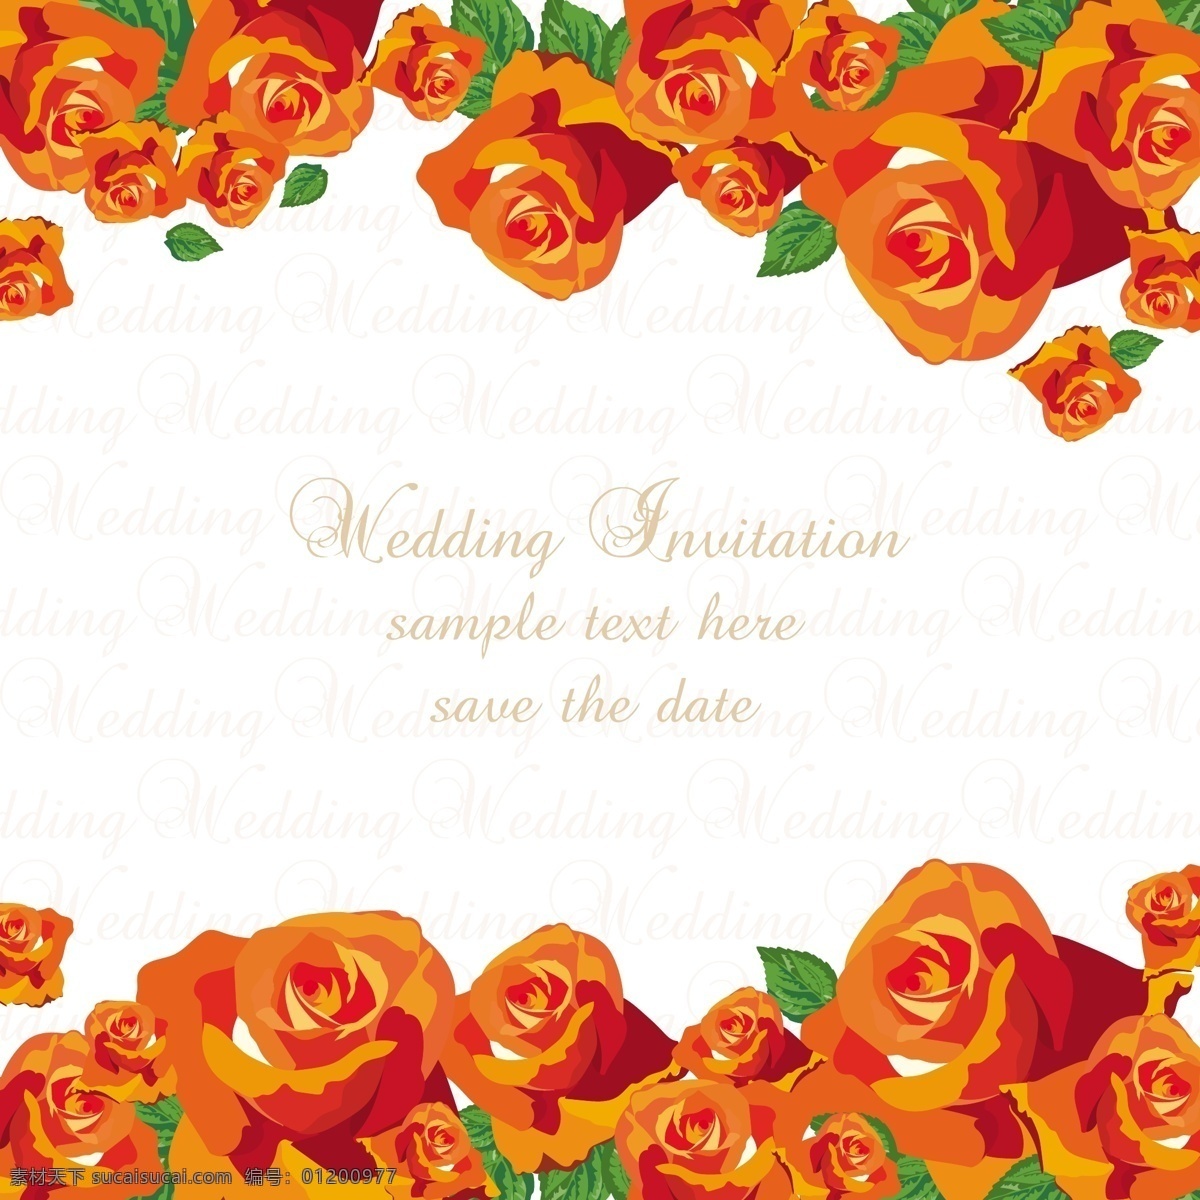 橙色 玫瑰 装饰 花边 婚礼 邀请 卡 橙色玫瑰 装饰花边 婚礼邀请卡